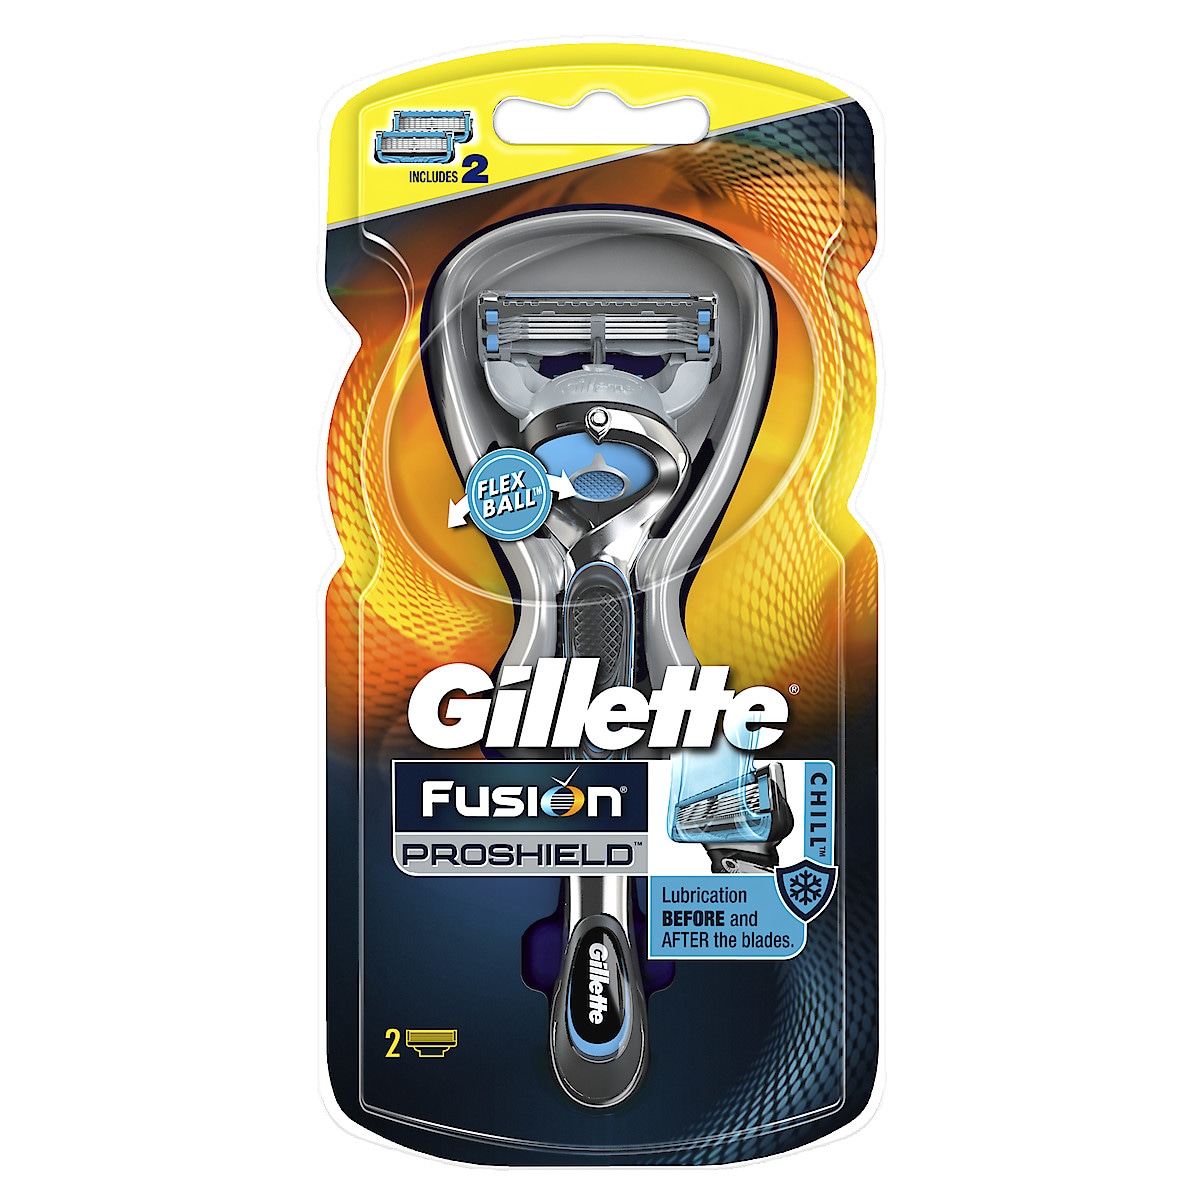 Gillette Fusion ProShield Chill barberhøvel